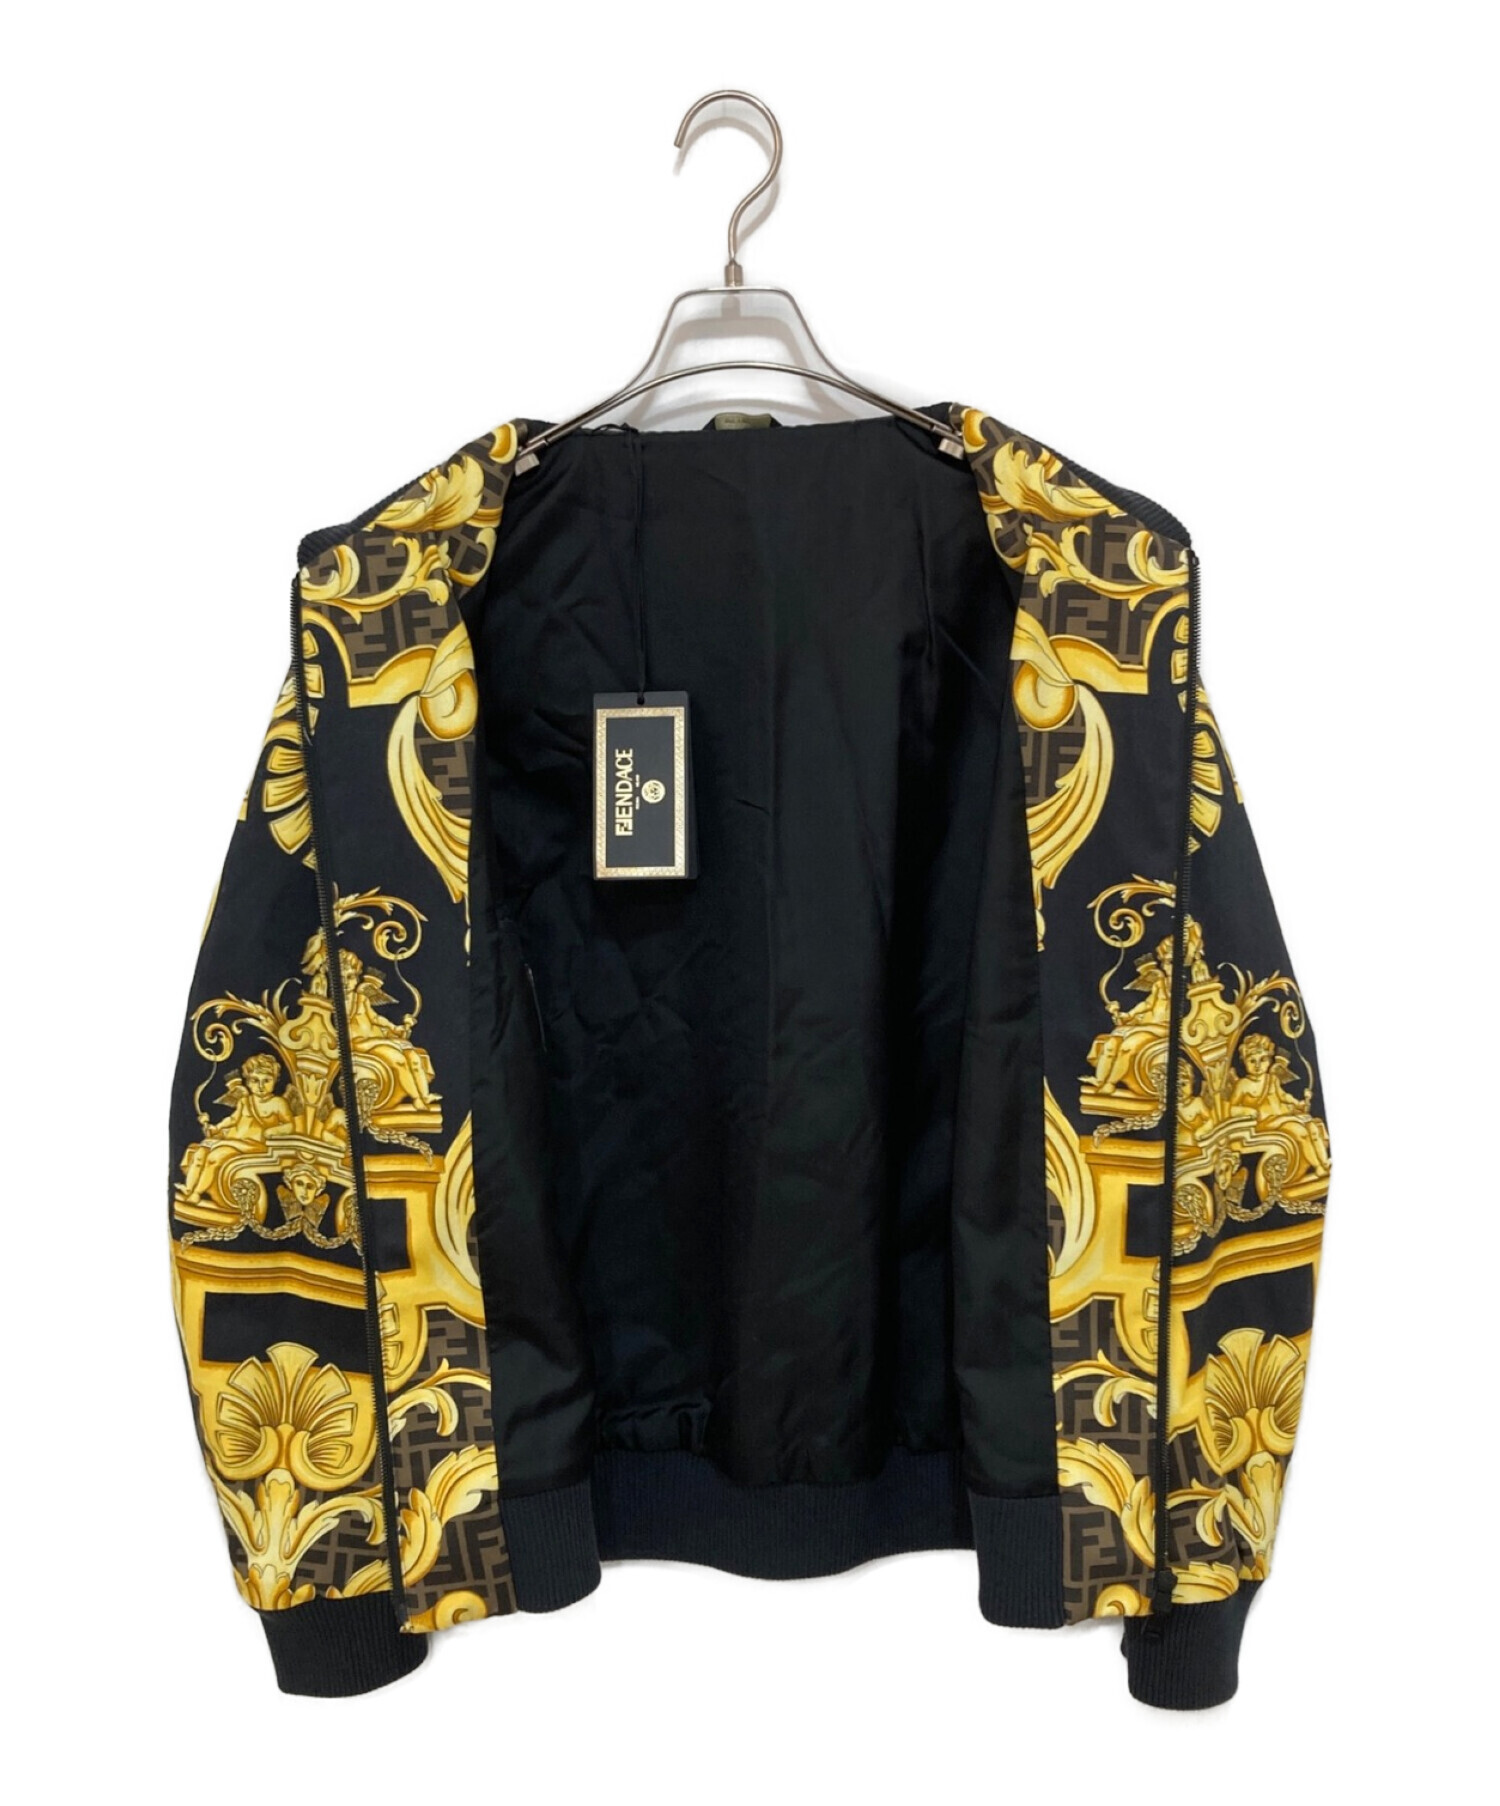 FENDI (フェンディ) VERSACE (ヴェルサーチェ) Fendace Multicolor Cotton Jacket ブラック サイズ:48